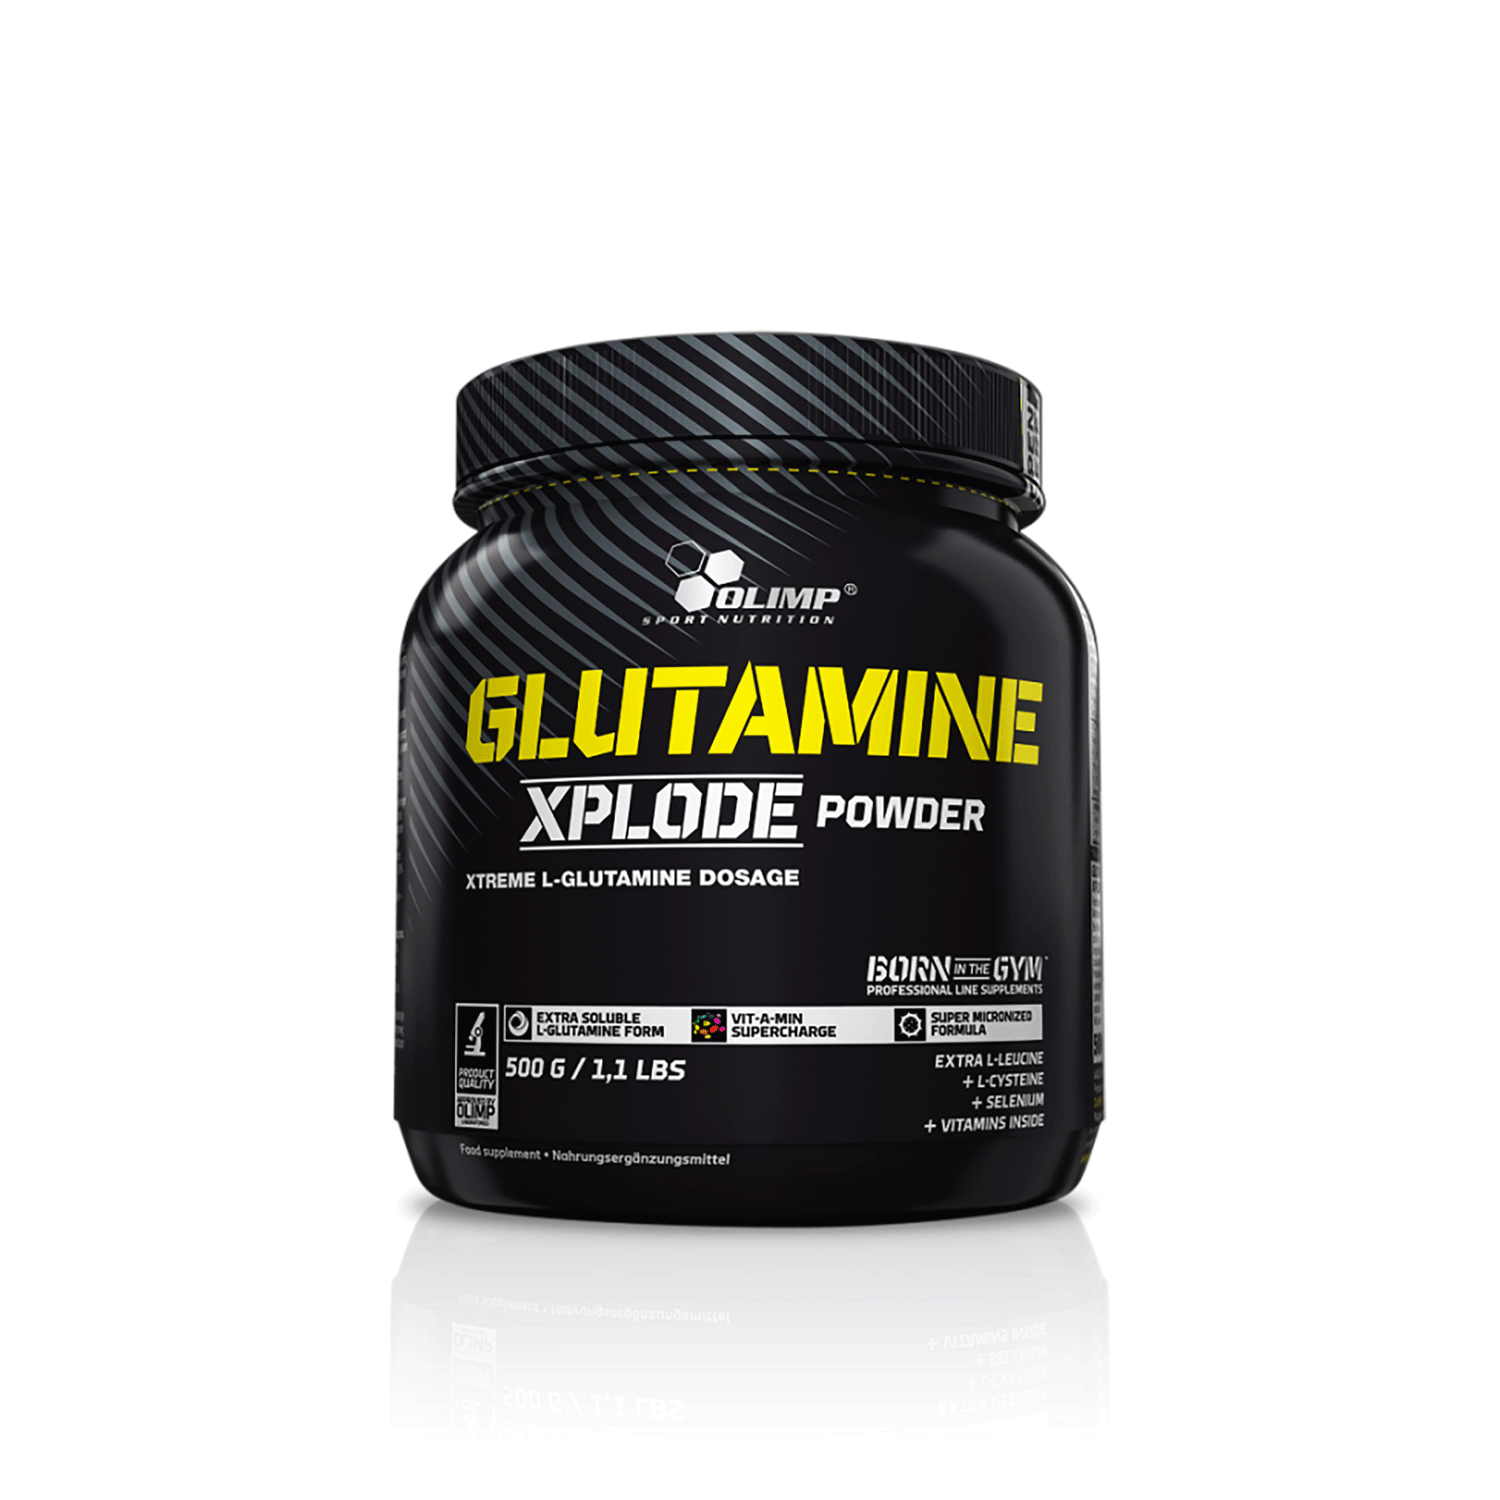 گلوتامین اکسپلود الیمپ | GLUTAMINE XPLODE OLIMP